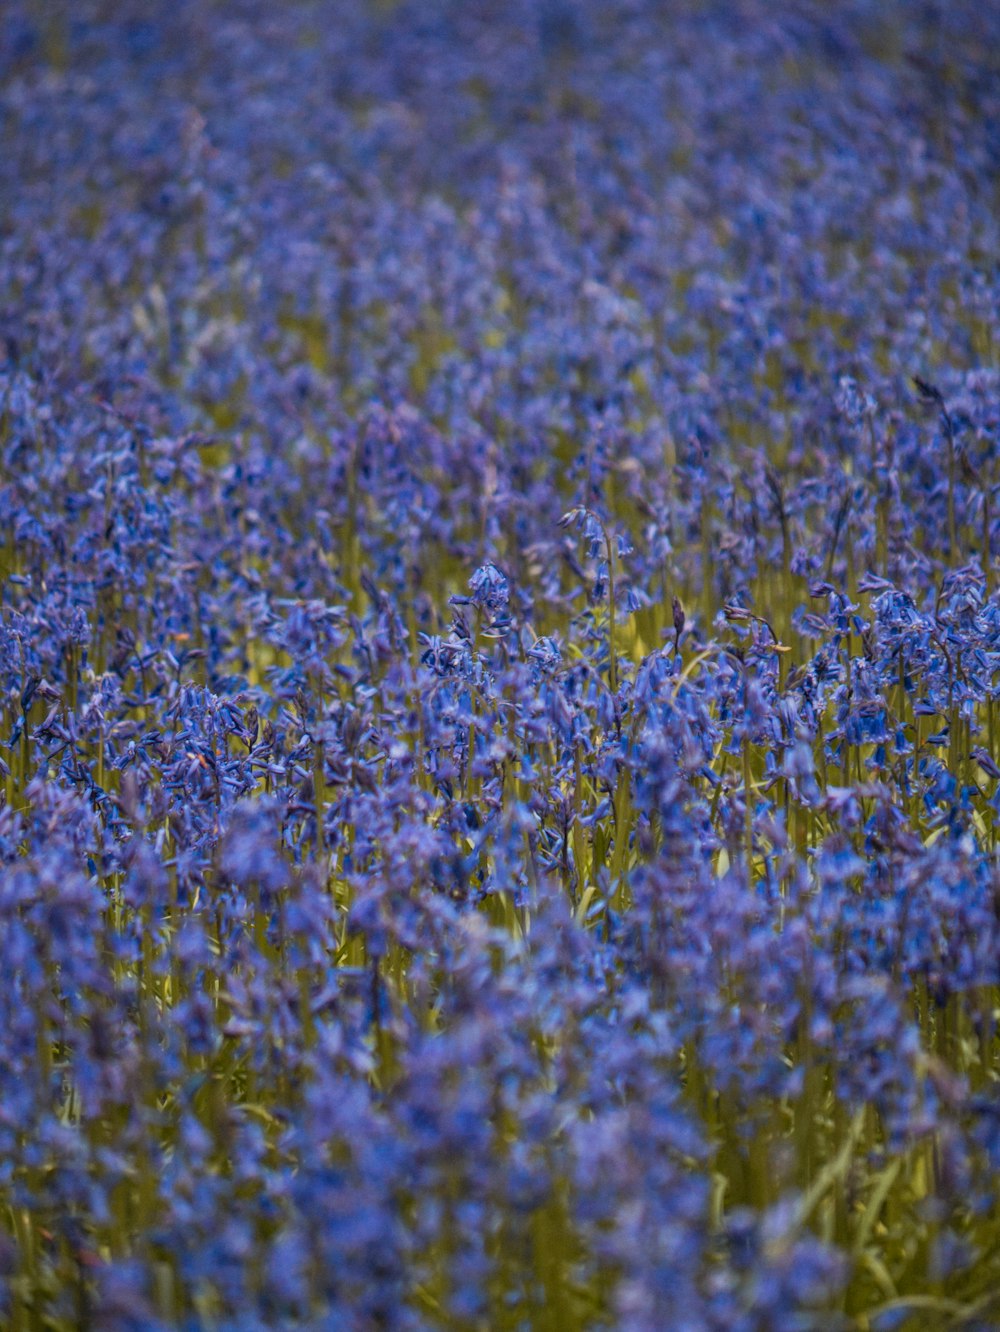 Un campo lleno de flores azules con un pájaro en medio del campo